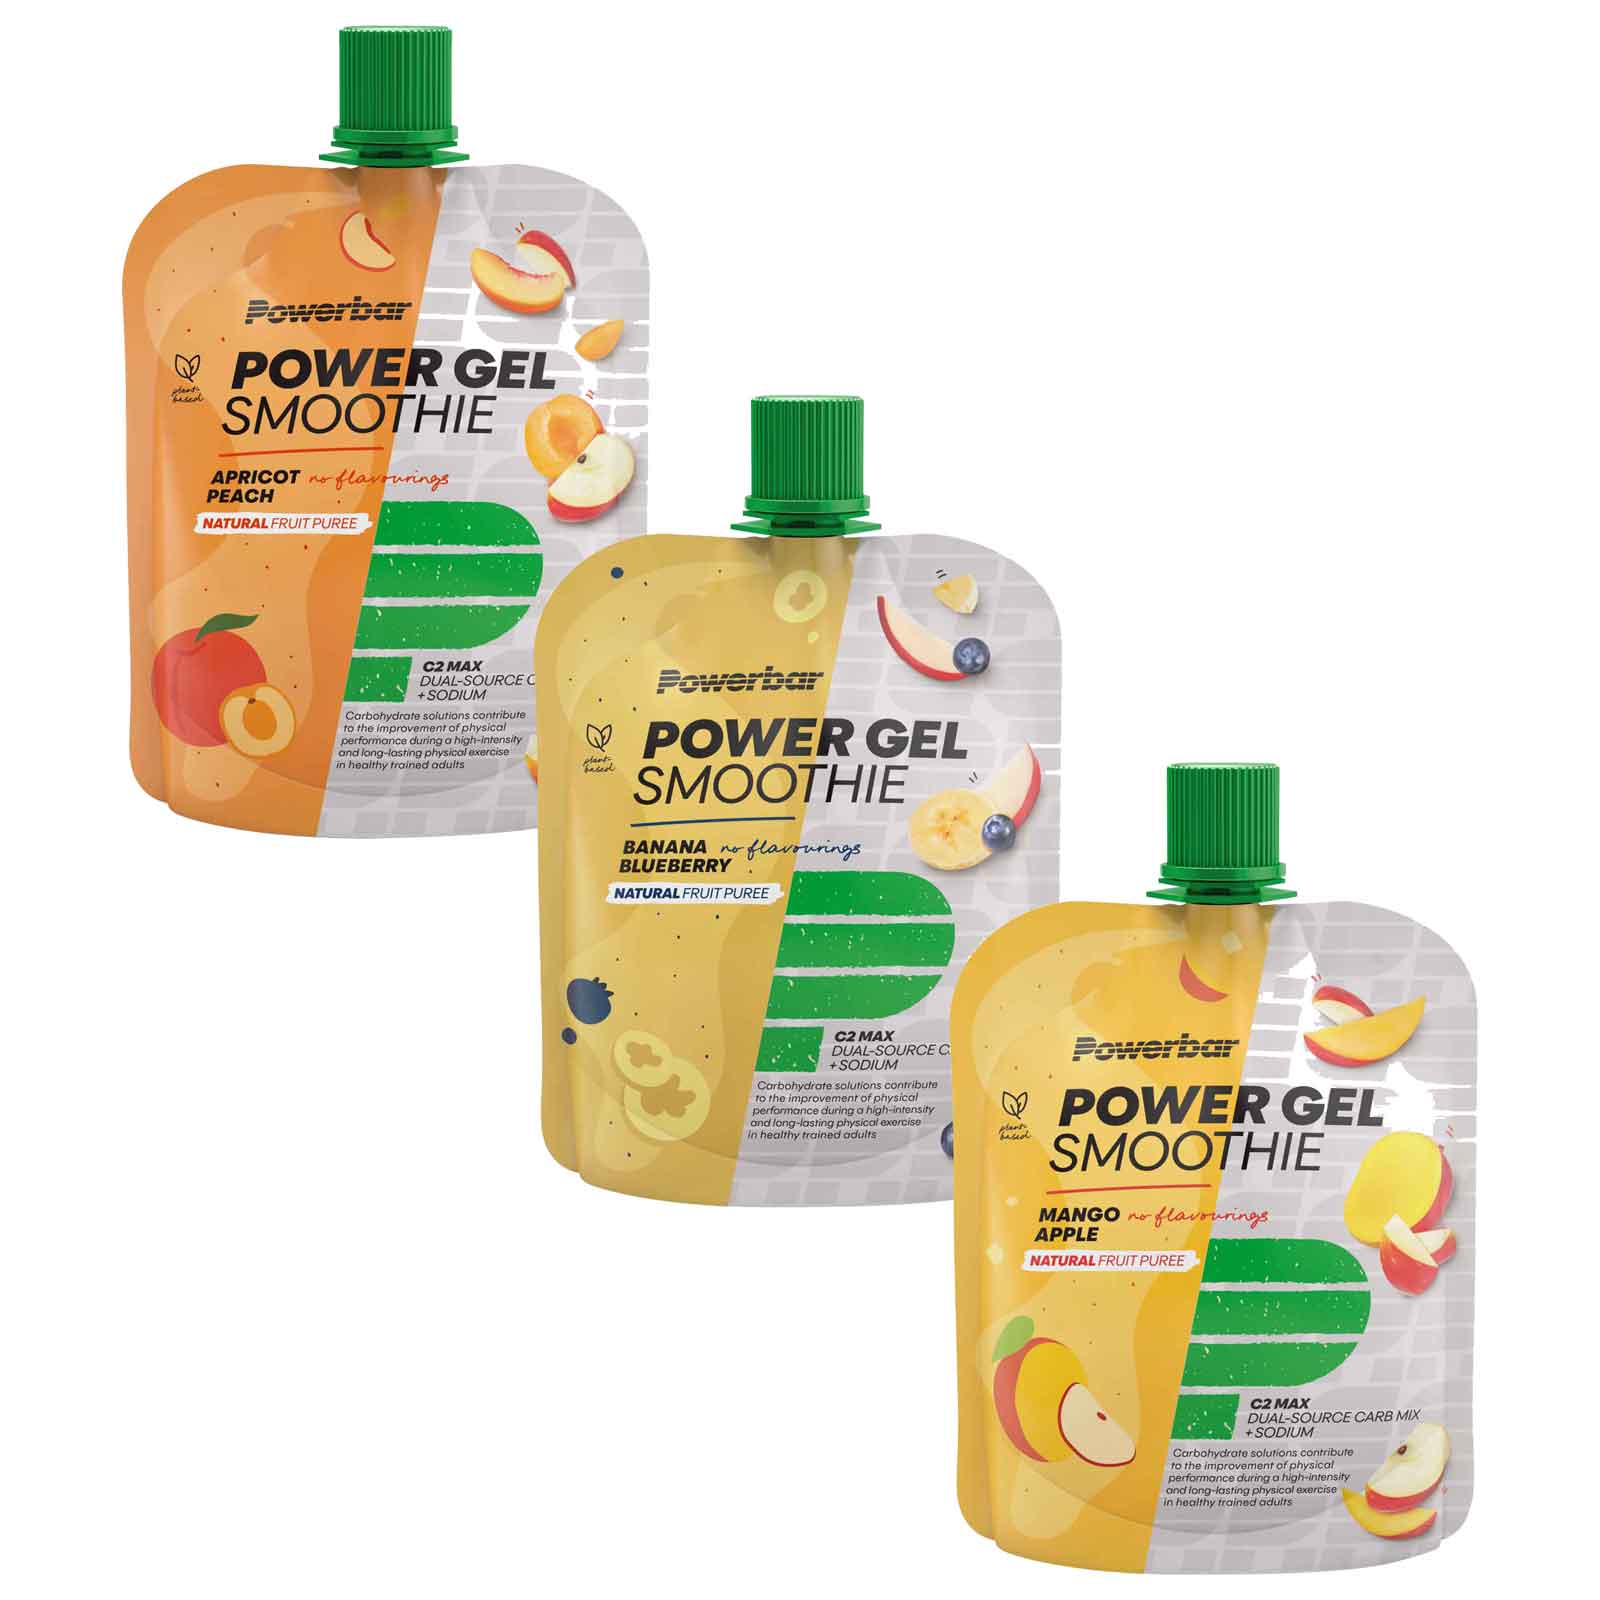 Immagine prodotto da Powerbar Purea di Frutta con Carboidrati - PowerGel Smoothie - 90g